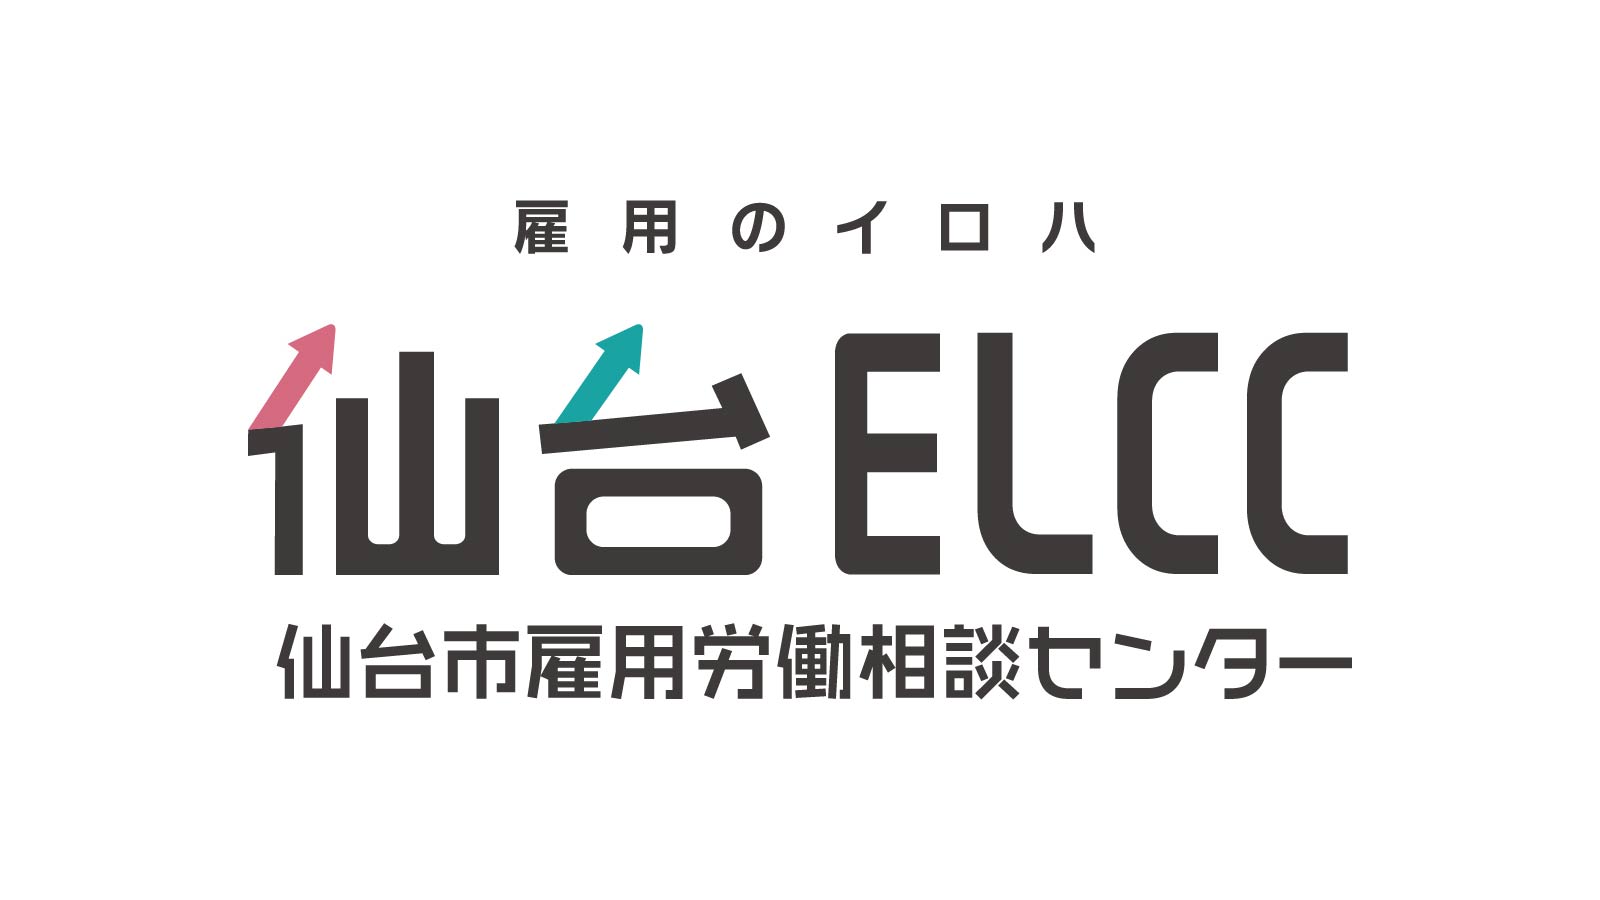 仙台ELCC・宮城県社会福祉法人経営者協議会 共催セミナー 「福祉人材の定着のための労務管理」